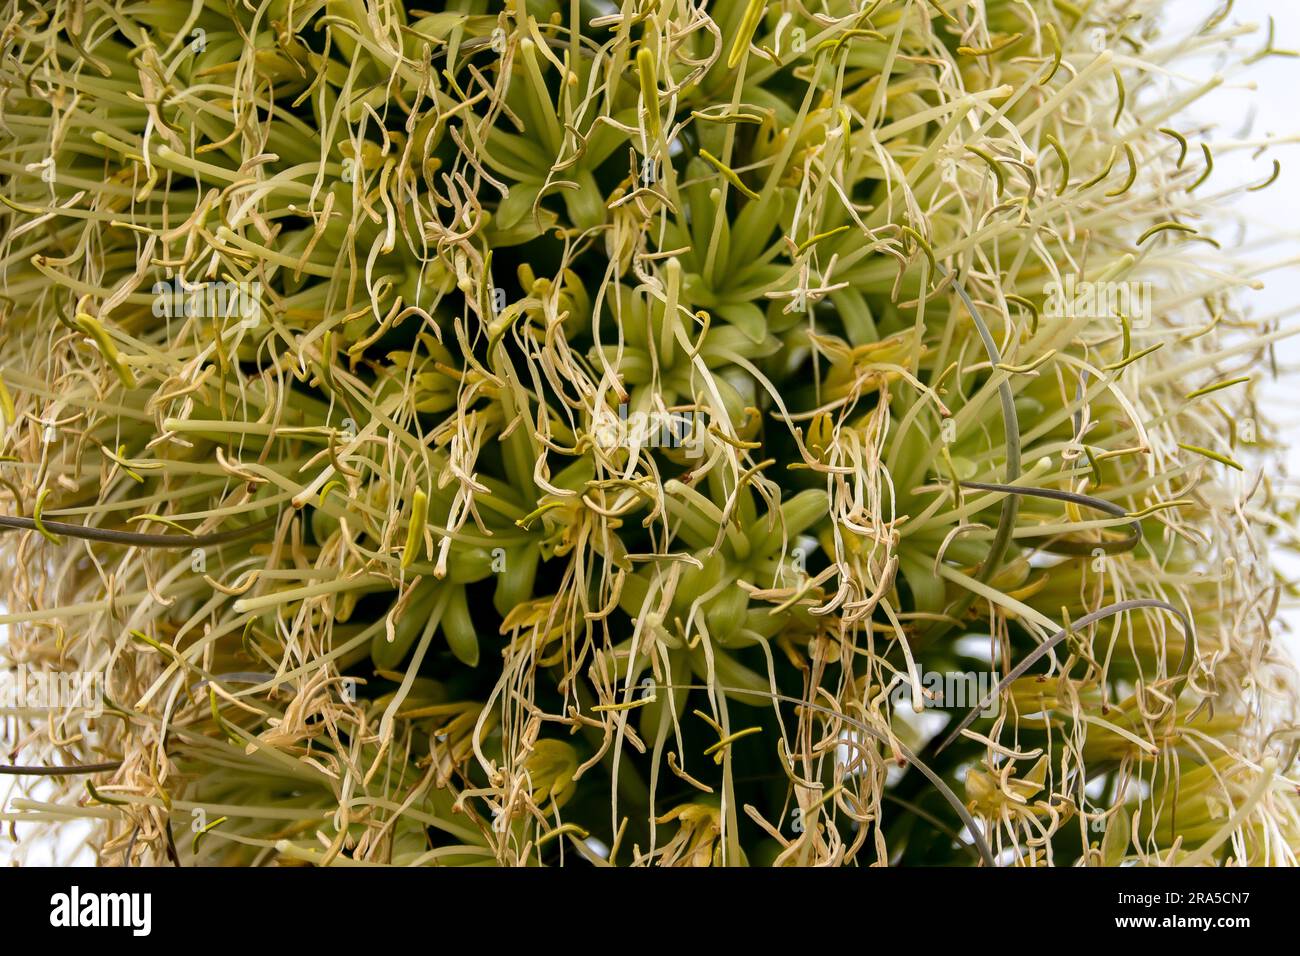 Gros plan de la fleur jaune crémeuse de l'agave attenuata, de l'agave de la queue de bœuf, juste après son meilleur. Les grains commencent à se former. Jardin australien en hiver. Banque D'Images